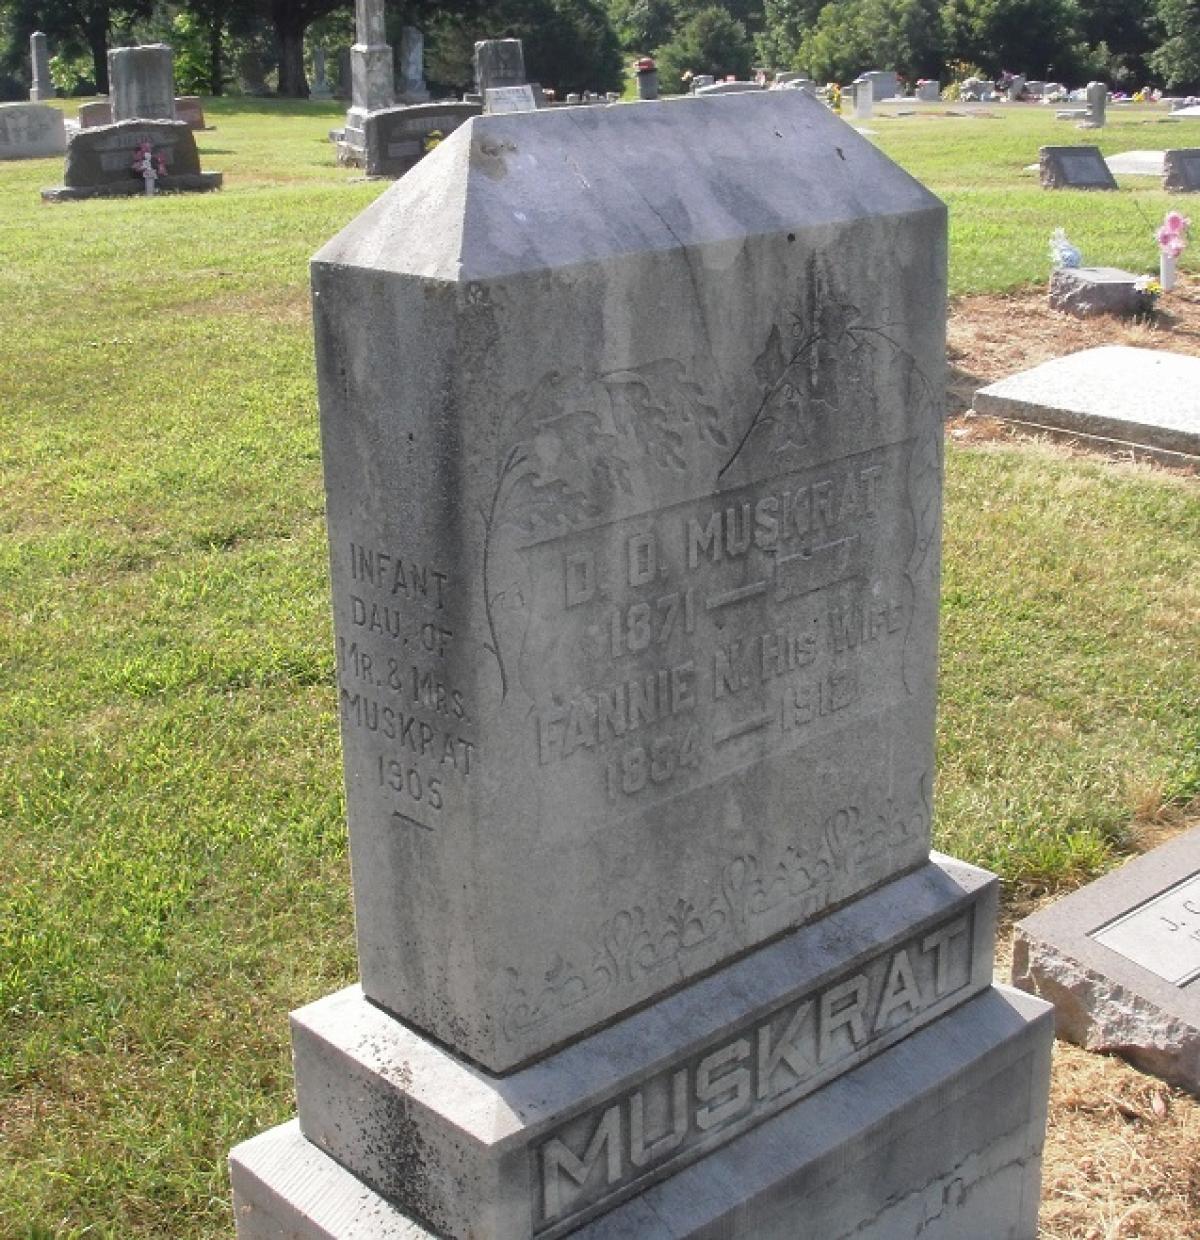 OK, Grove, Olympus Cemetery, Muskrat, D. D. & Fannie N. & Infant Daughter Headstone